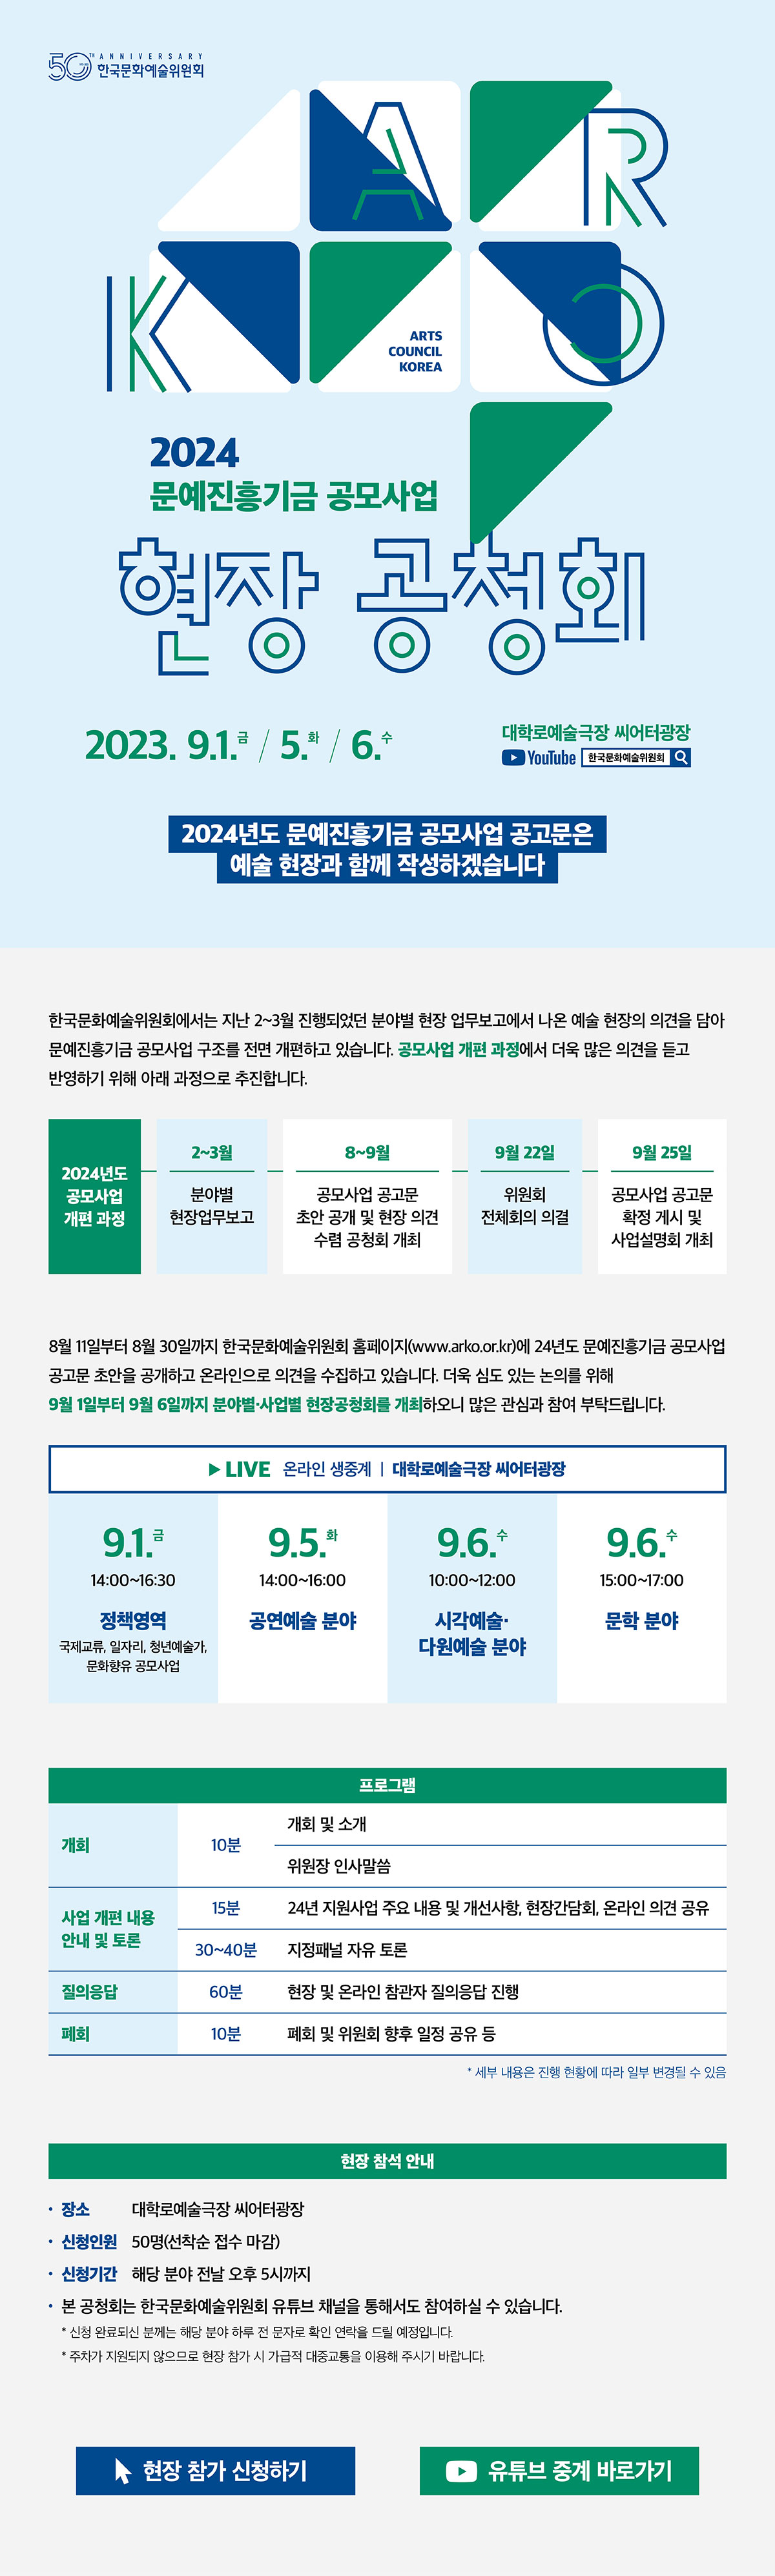 2024 문예진흥기금 공모사업 현장 공청회(자세한 내용 아래 참조)